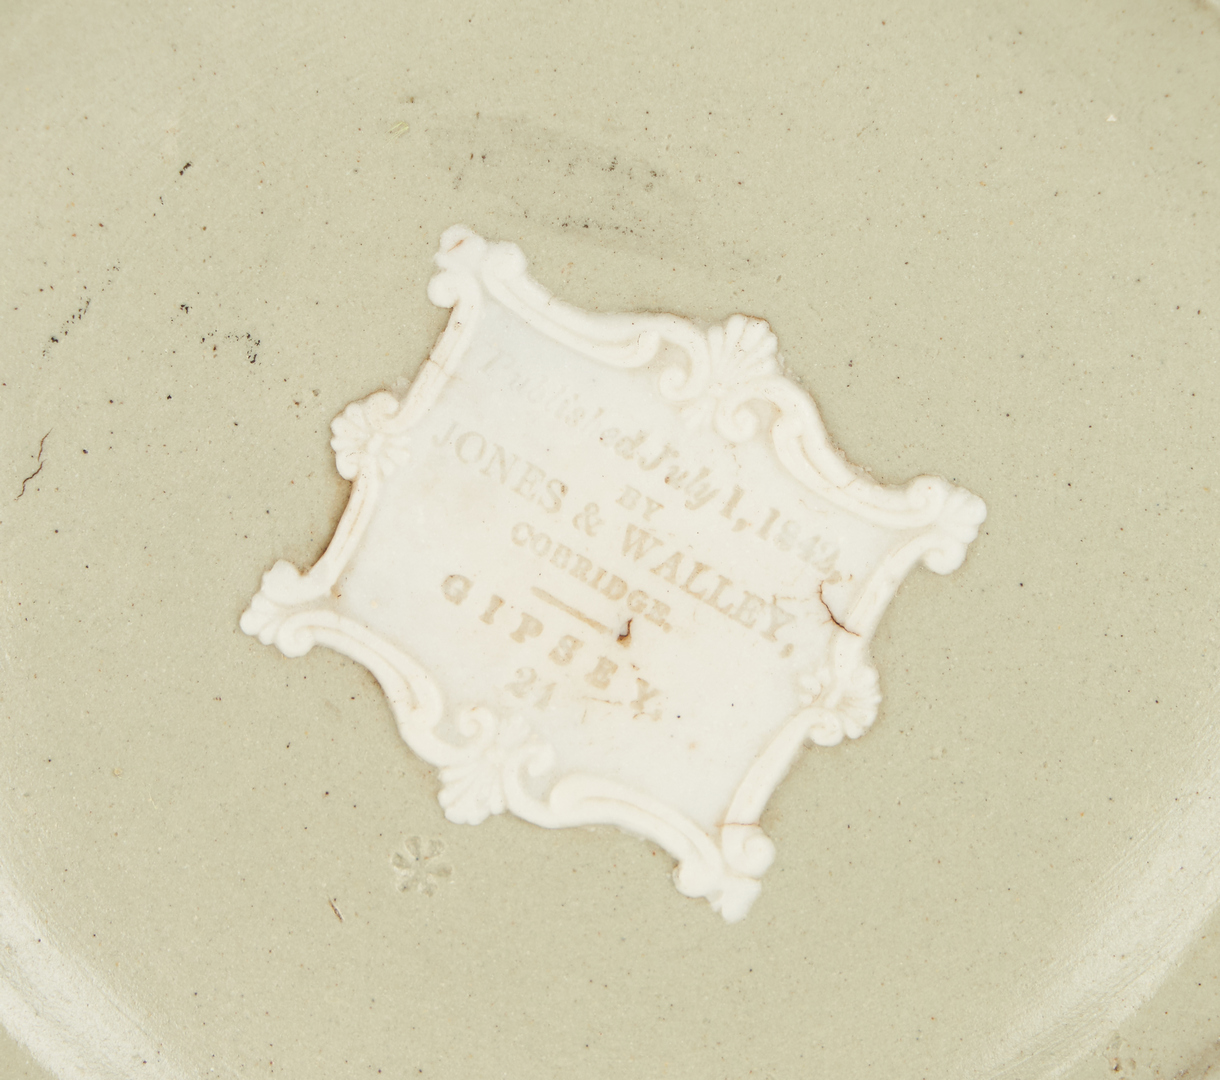 Lot 959: 54 British Ceramic Items, incl. Tassies, Vessels